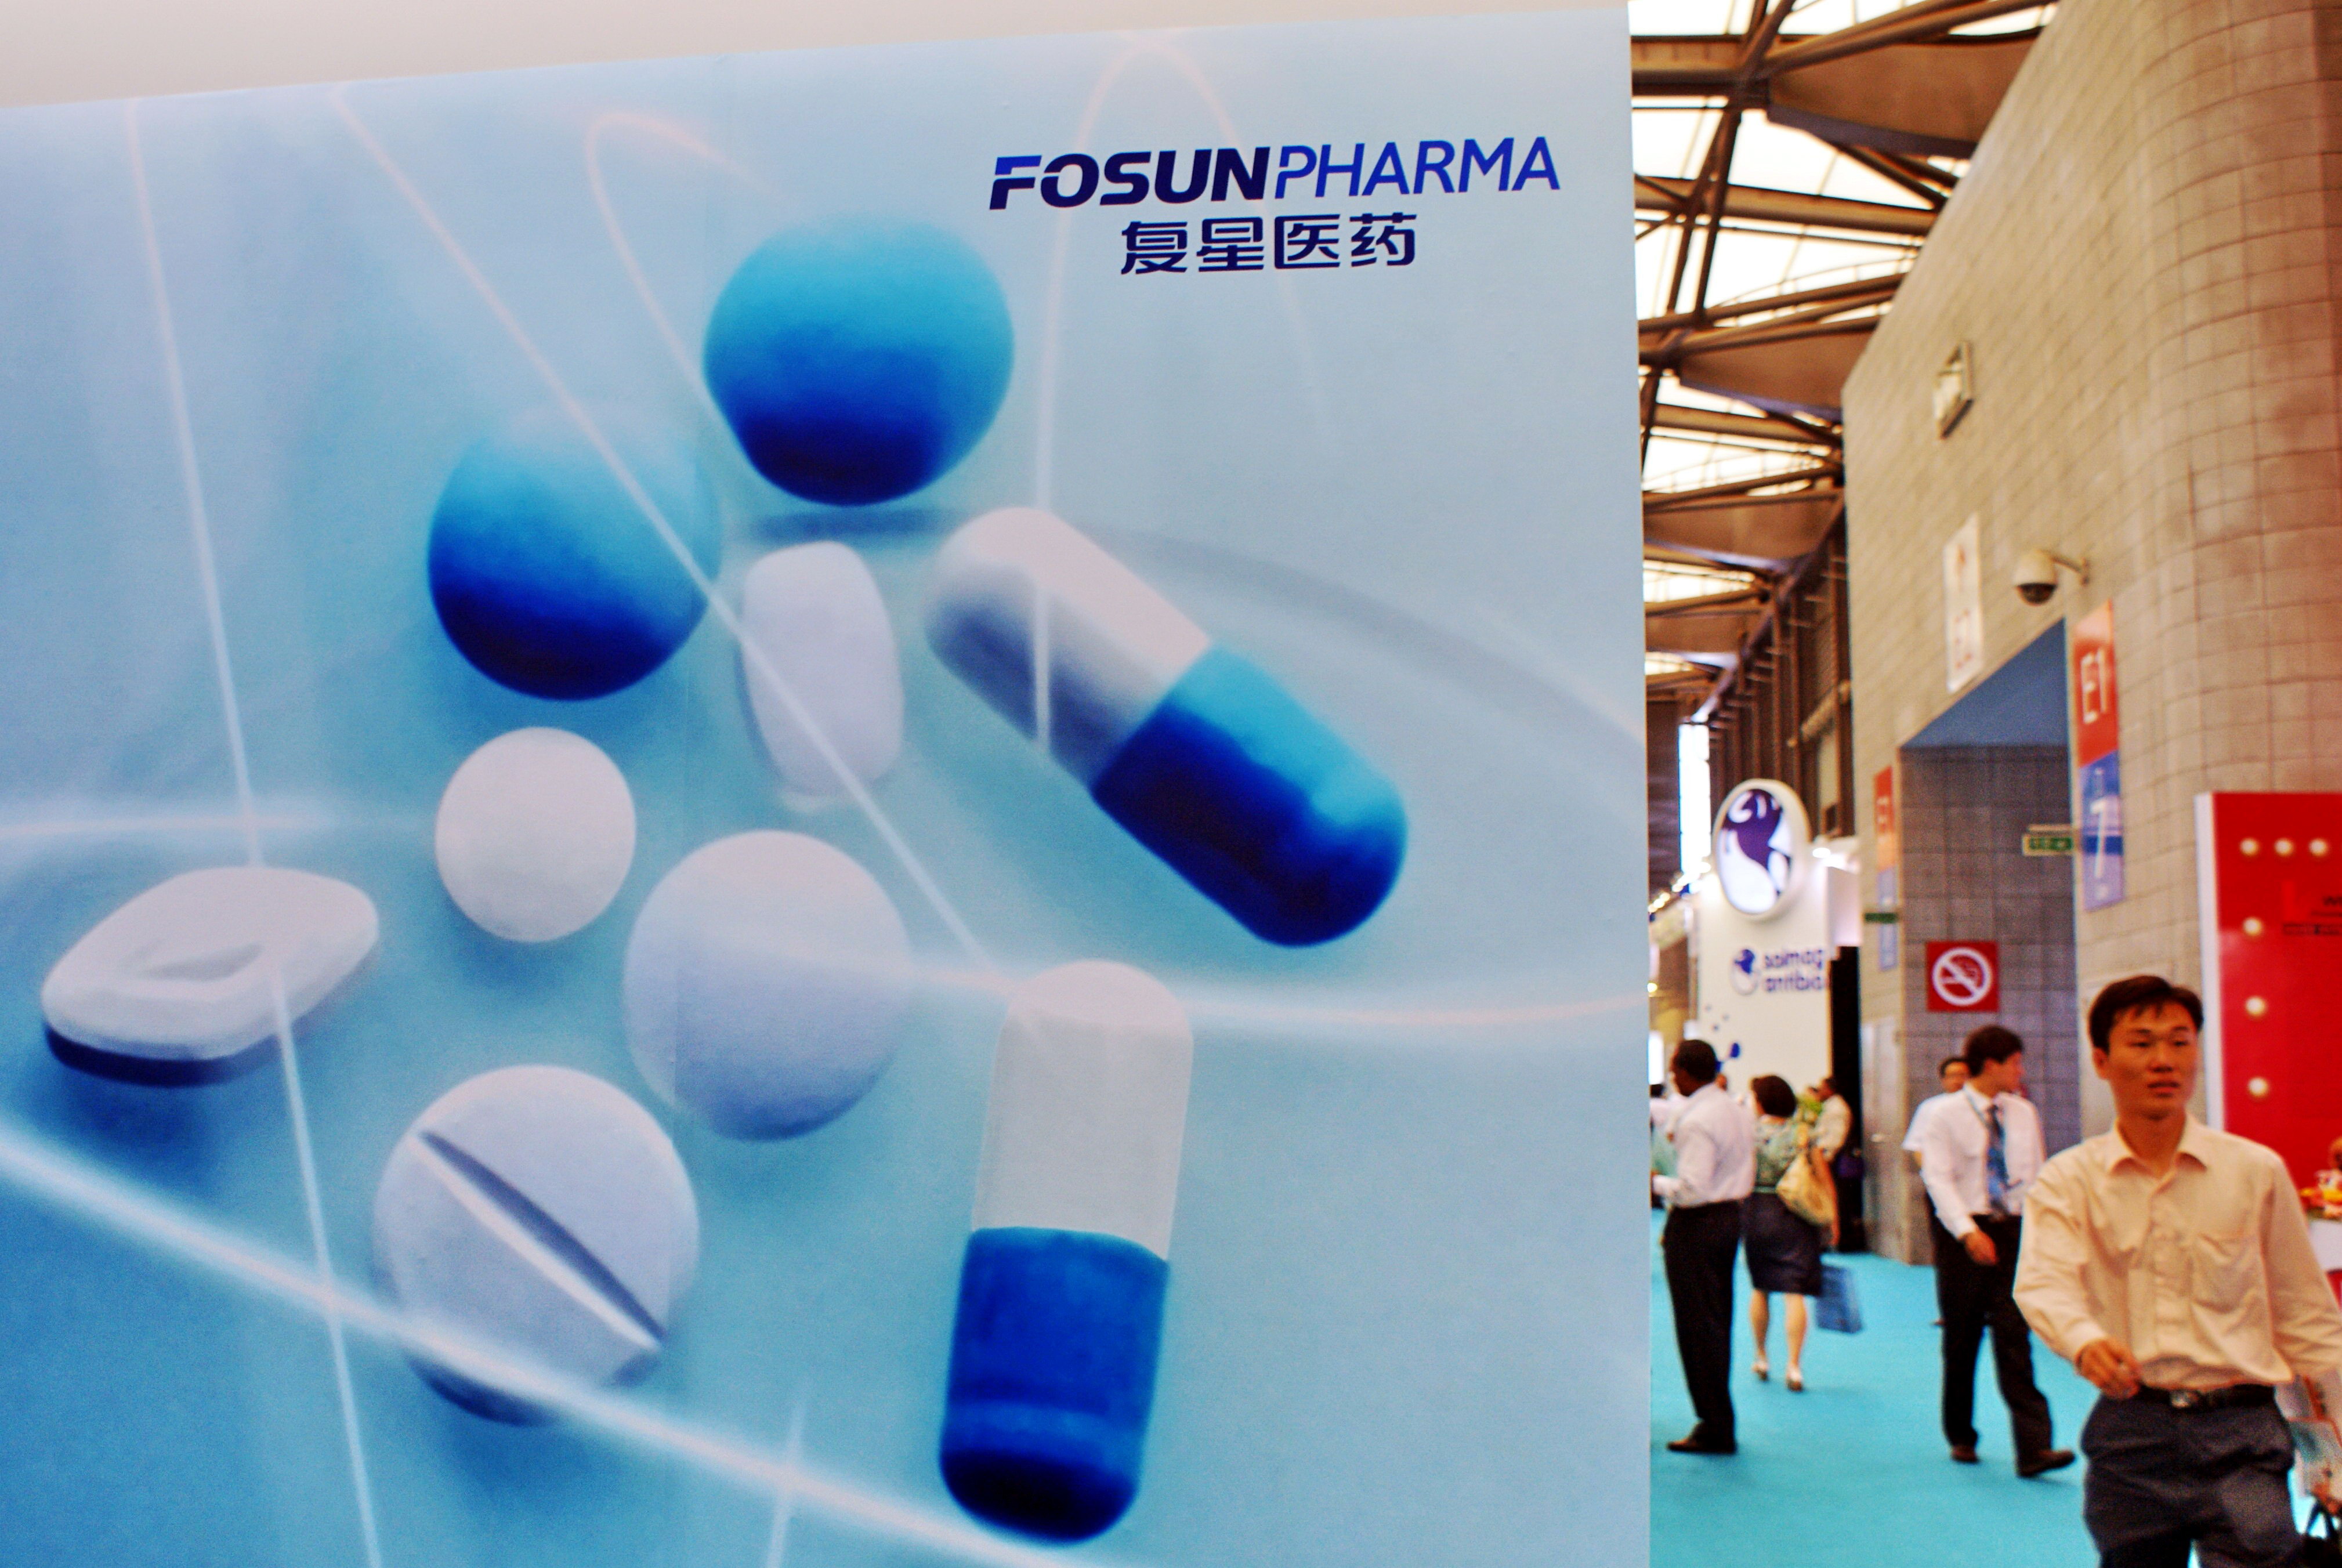 Pharmaceutical companies seek global solutions